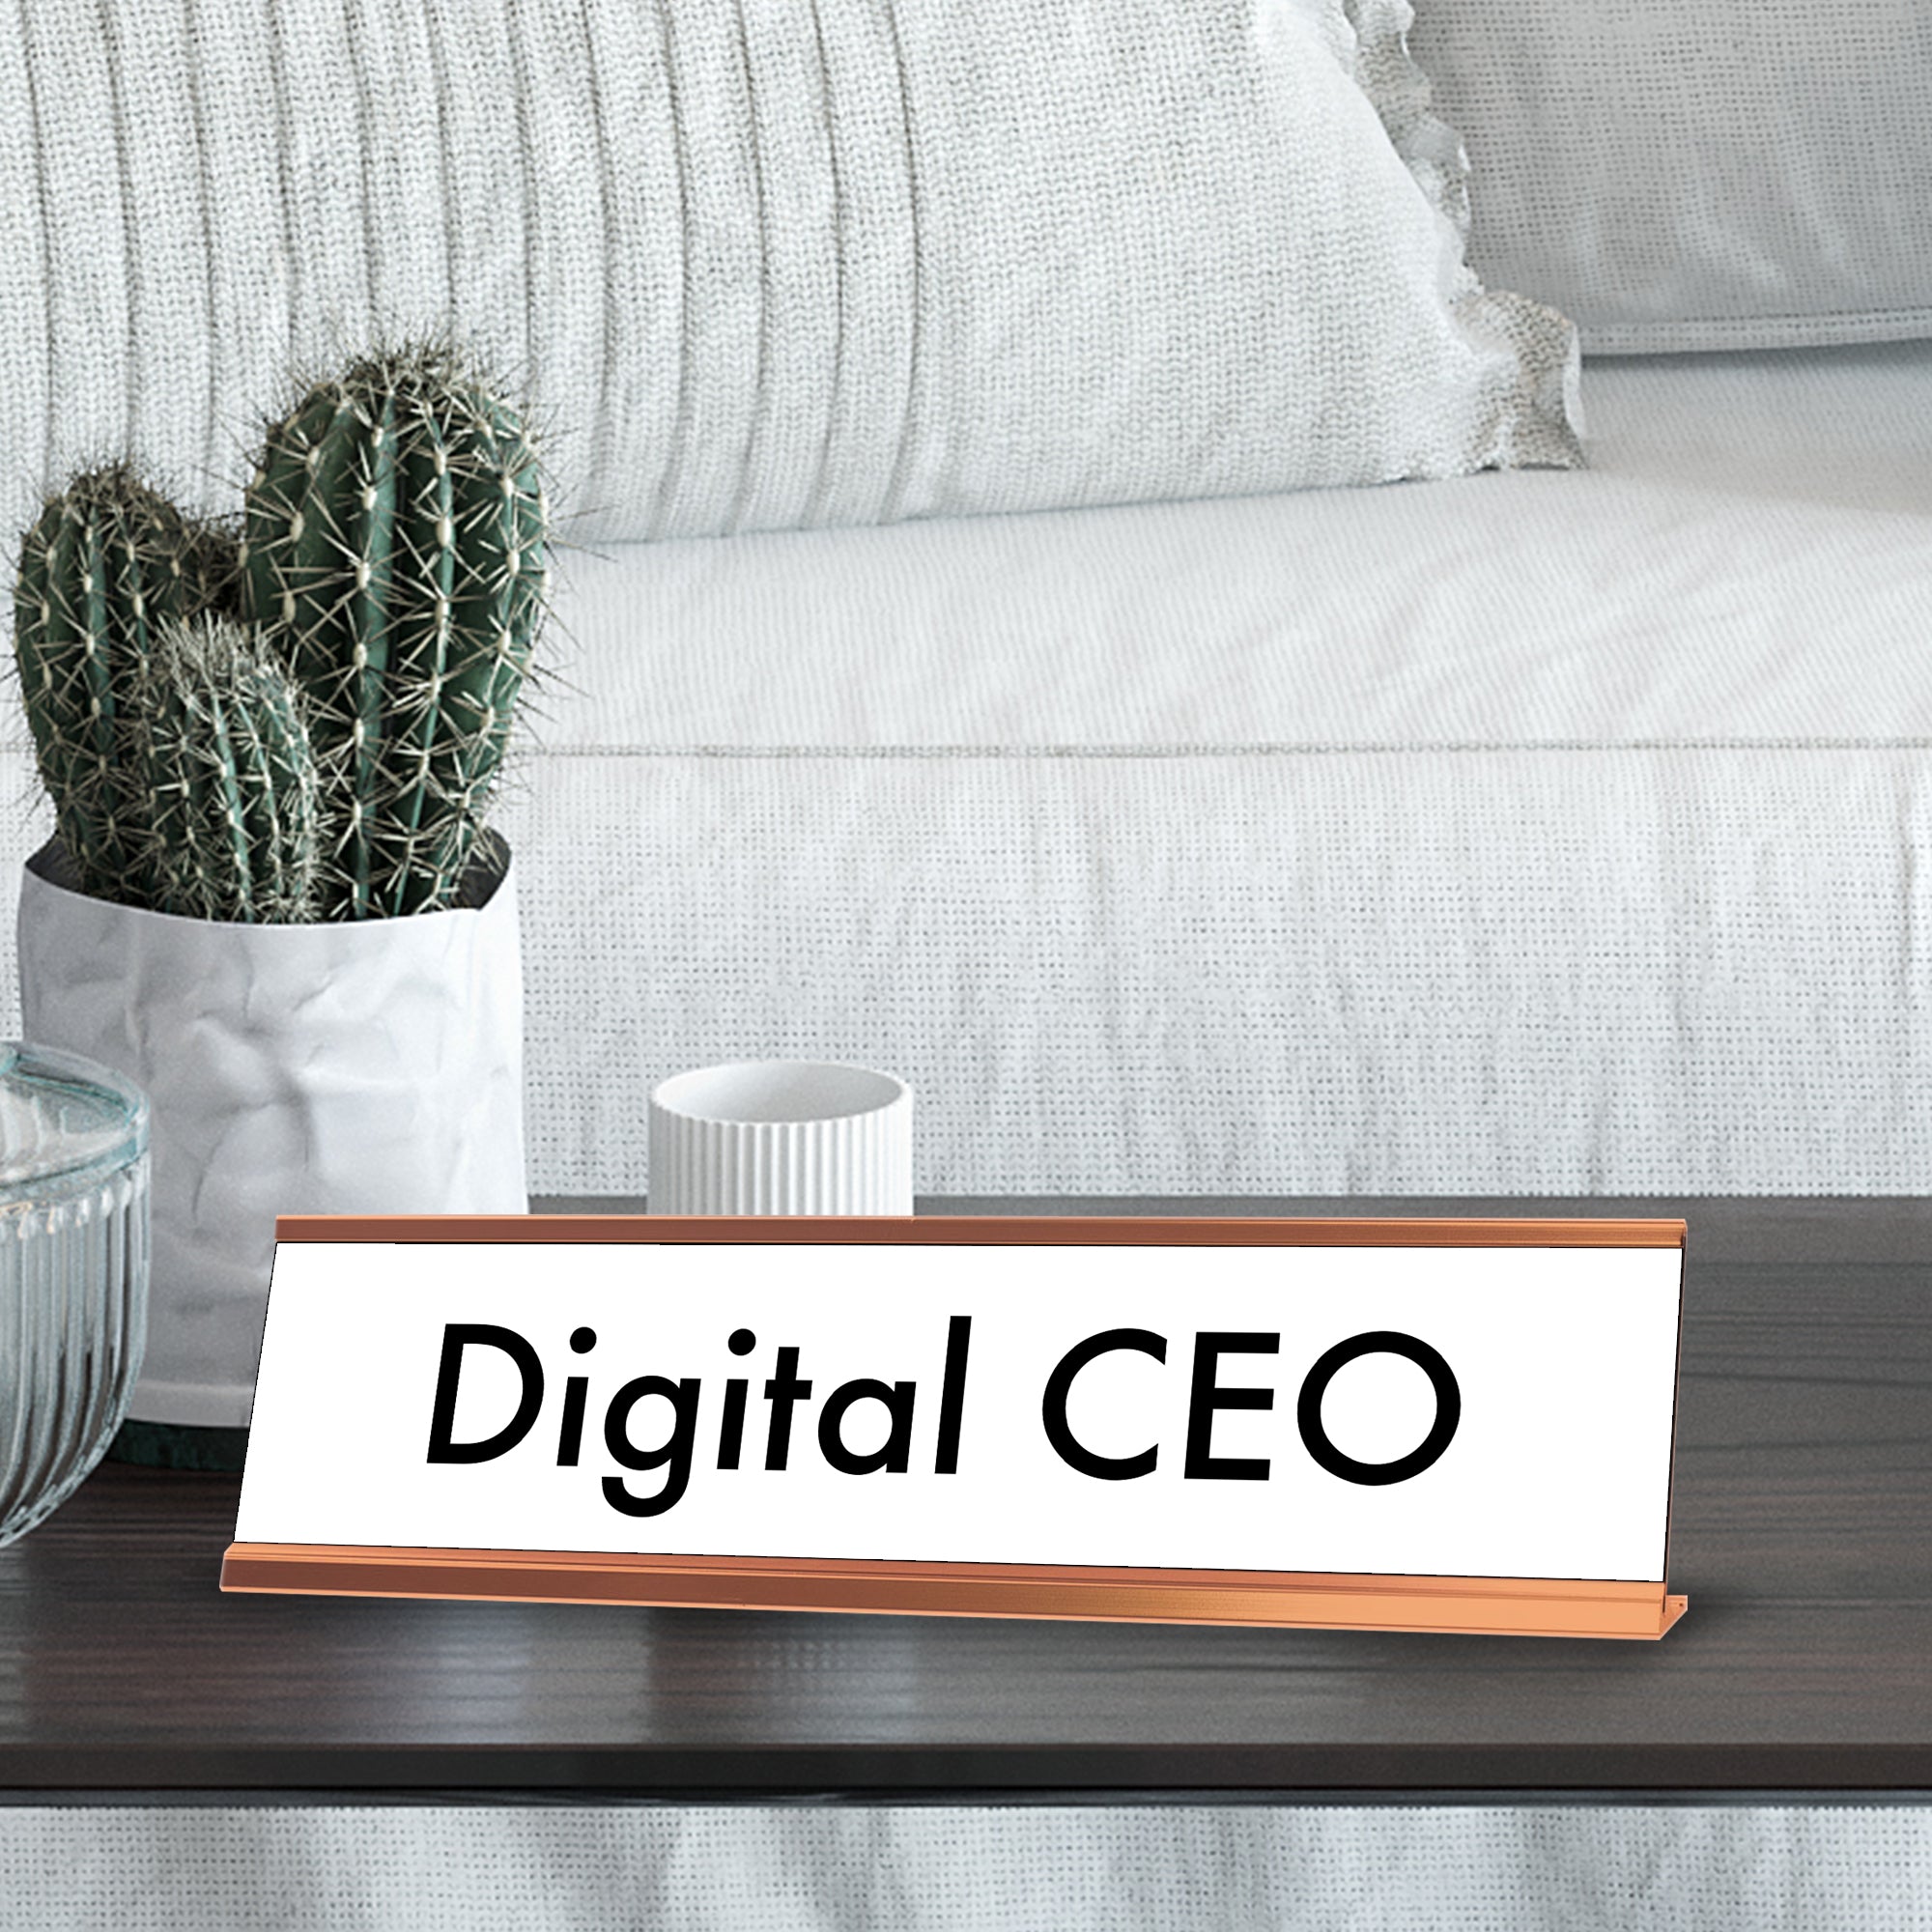 Digital CEO, Rose Gold Desk Sign (2 x 8")